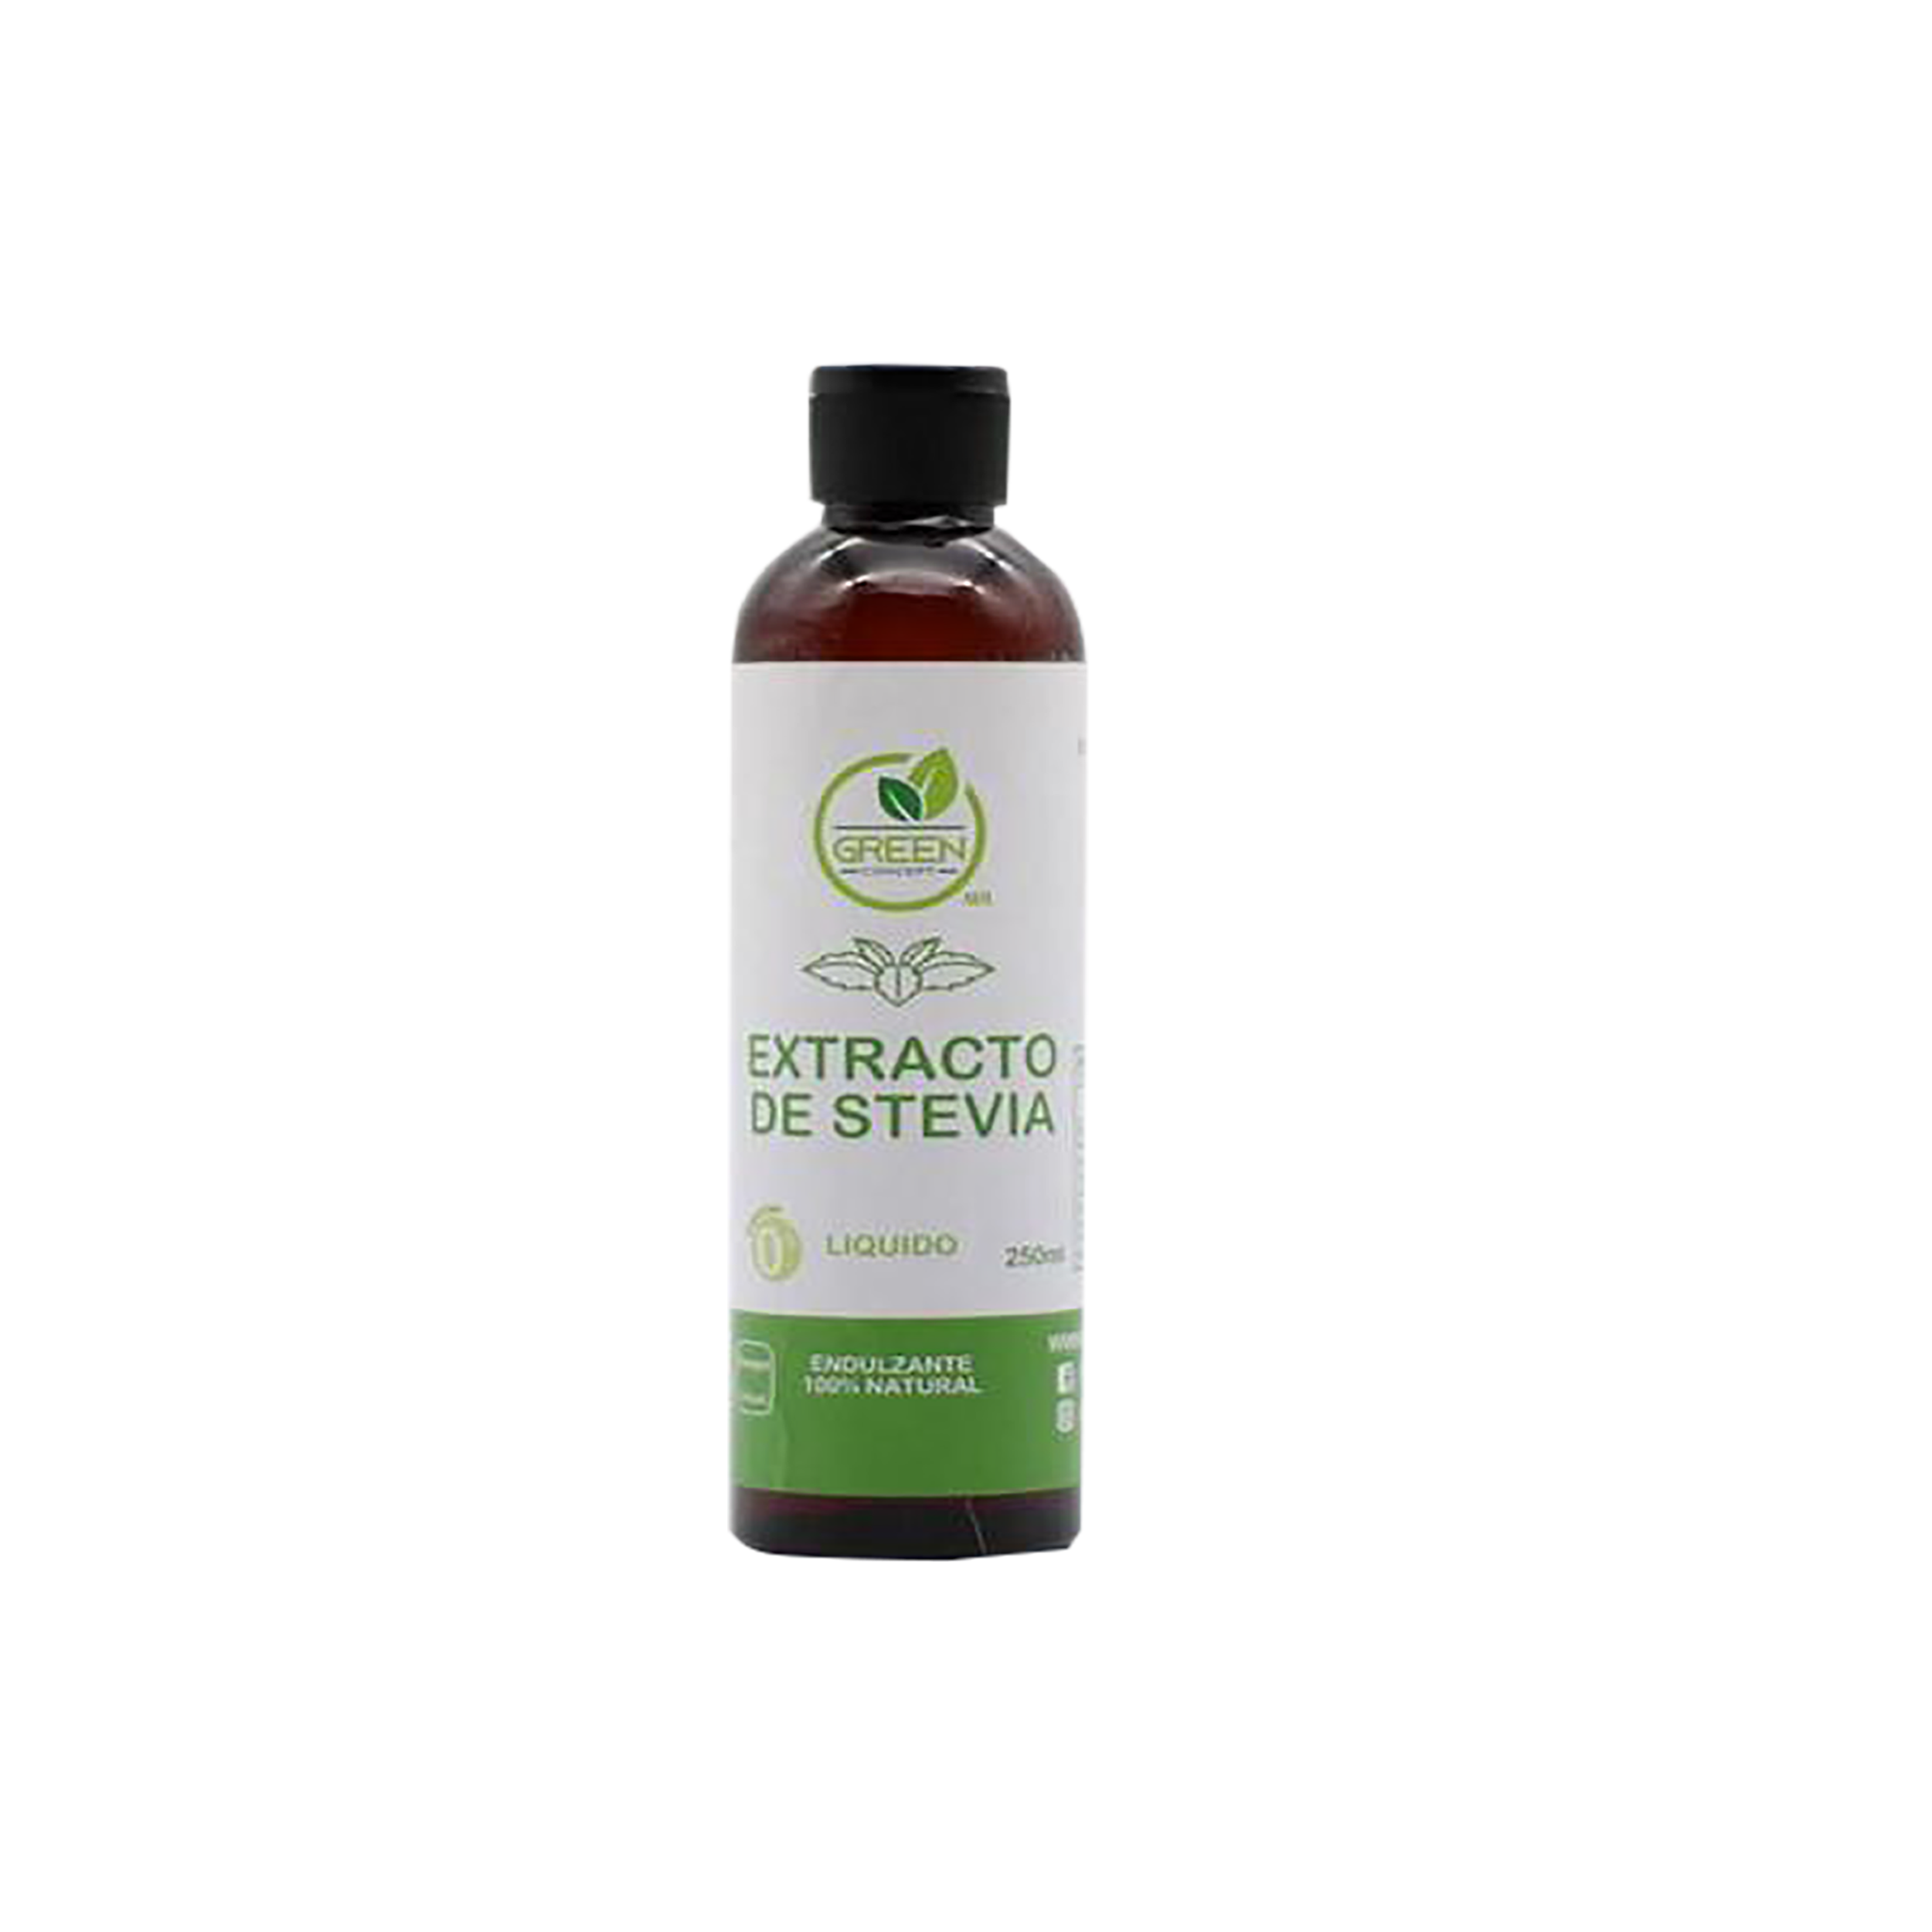 Green concept -Extracto de stevia